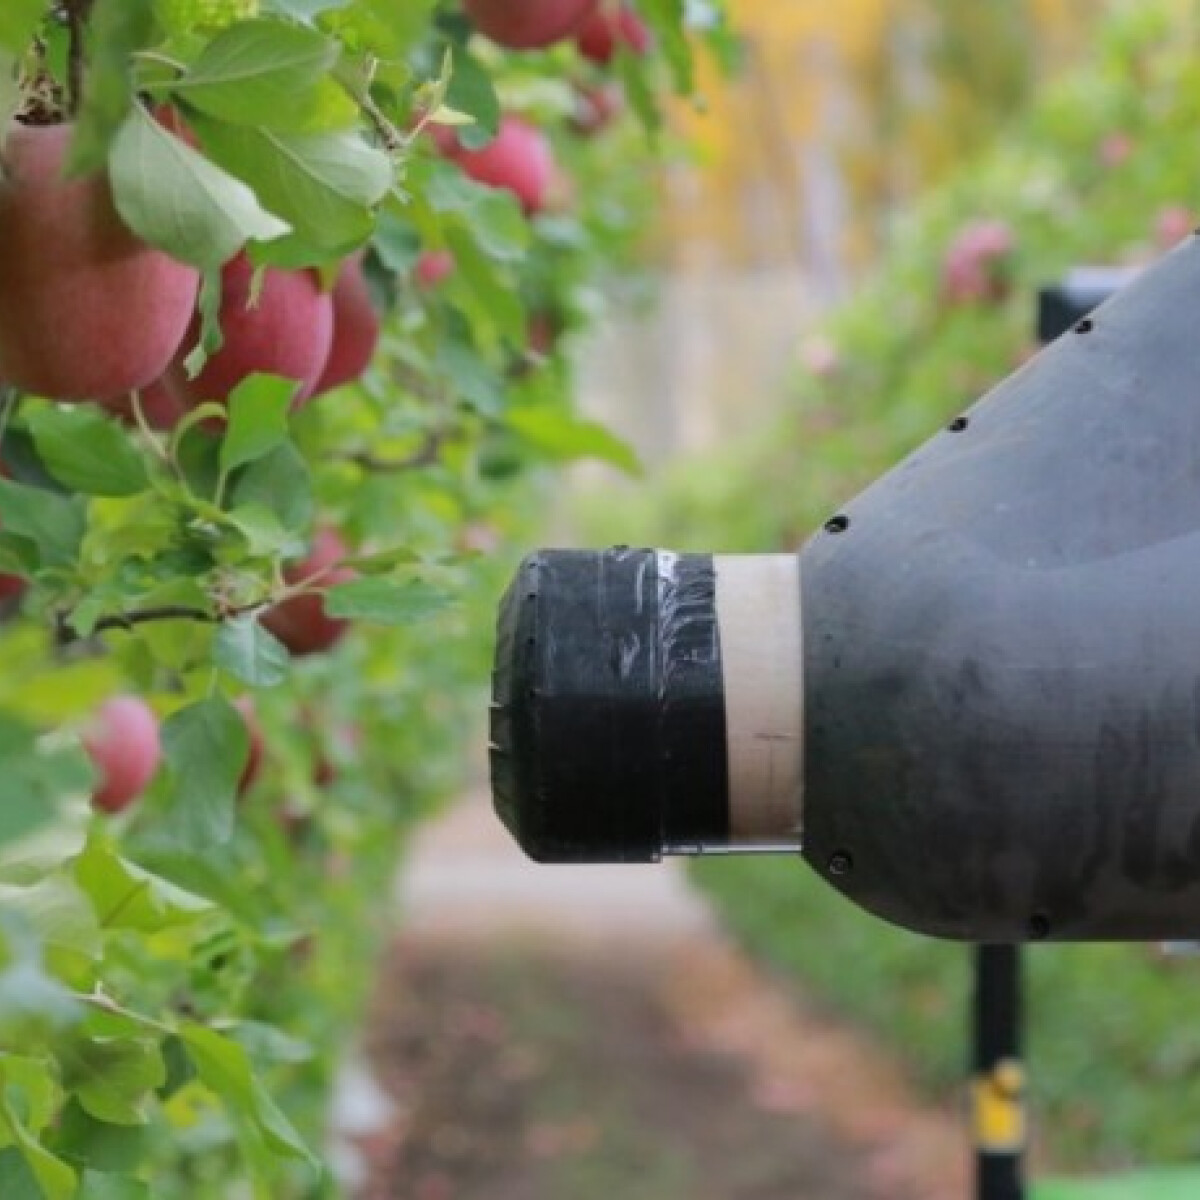 Itt az almaszedő robot - Ez lenne a megoldás a munkaerőhiányra?